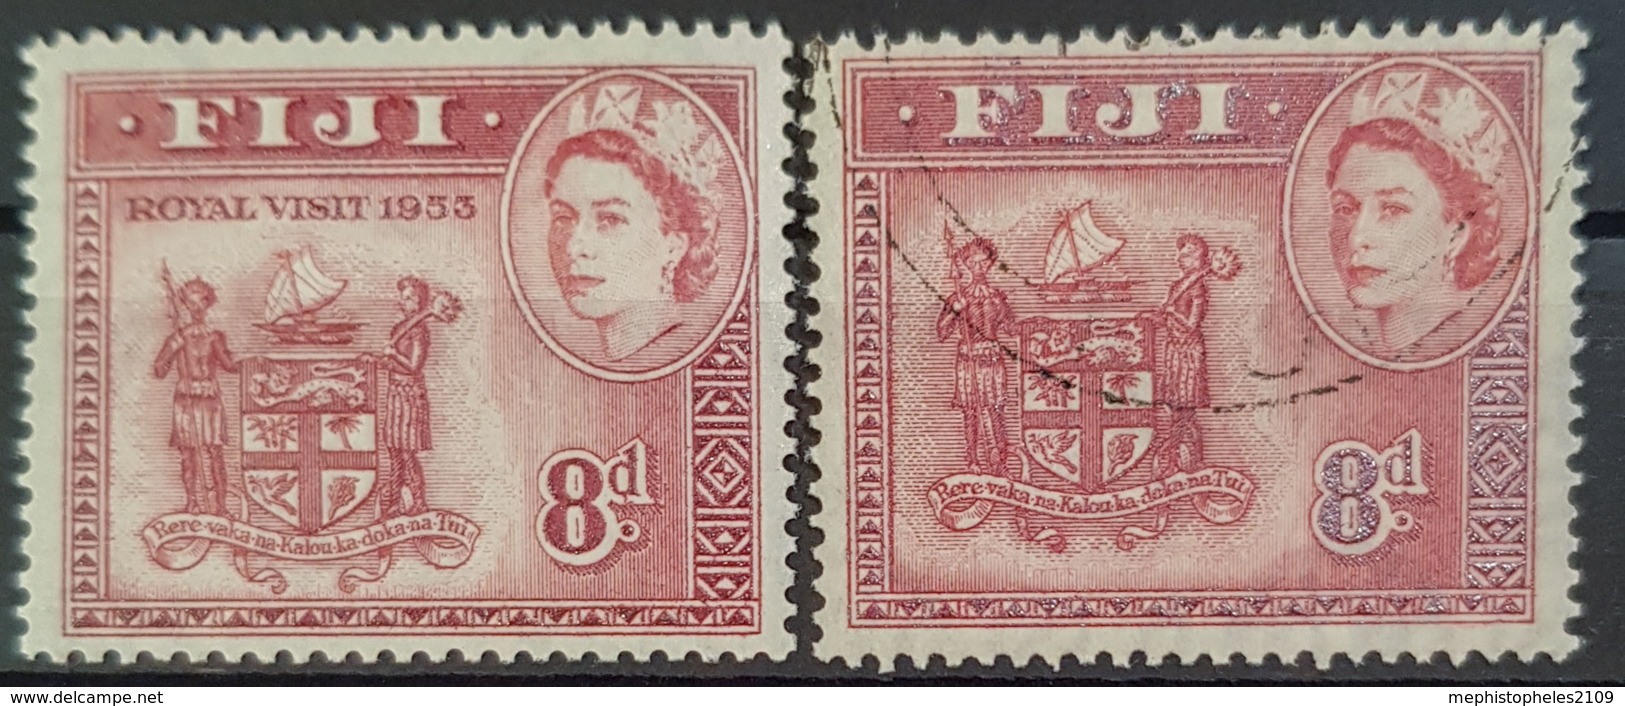 FIJI 1953 - MNH And Canceled - Sc#146 - Royal Visit 1953 - Fidschi-Inseln (...-1970)